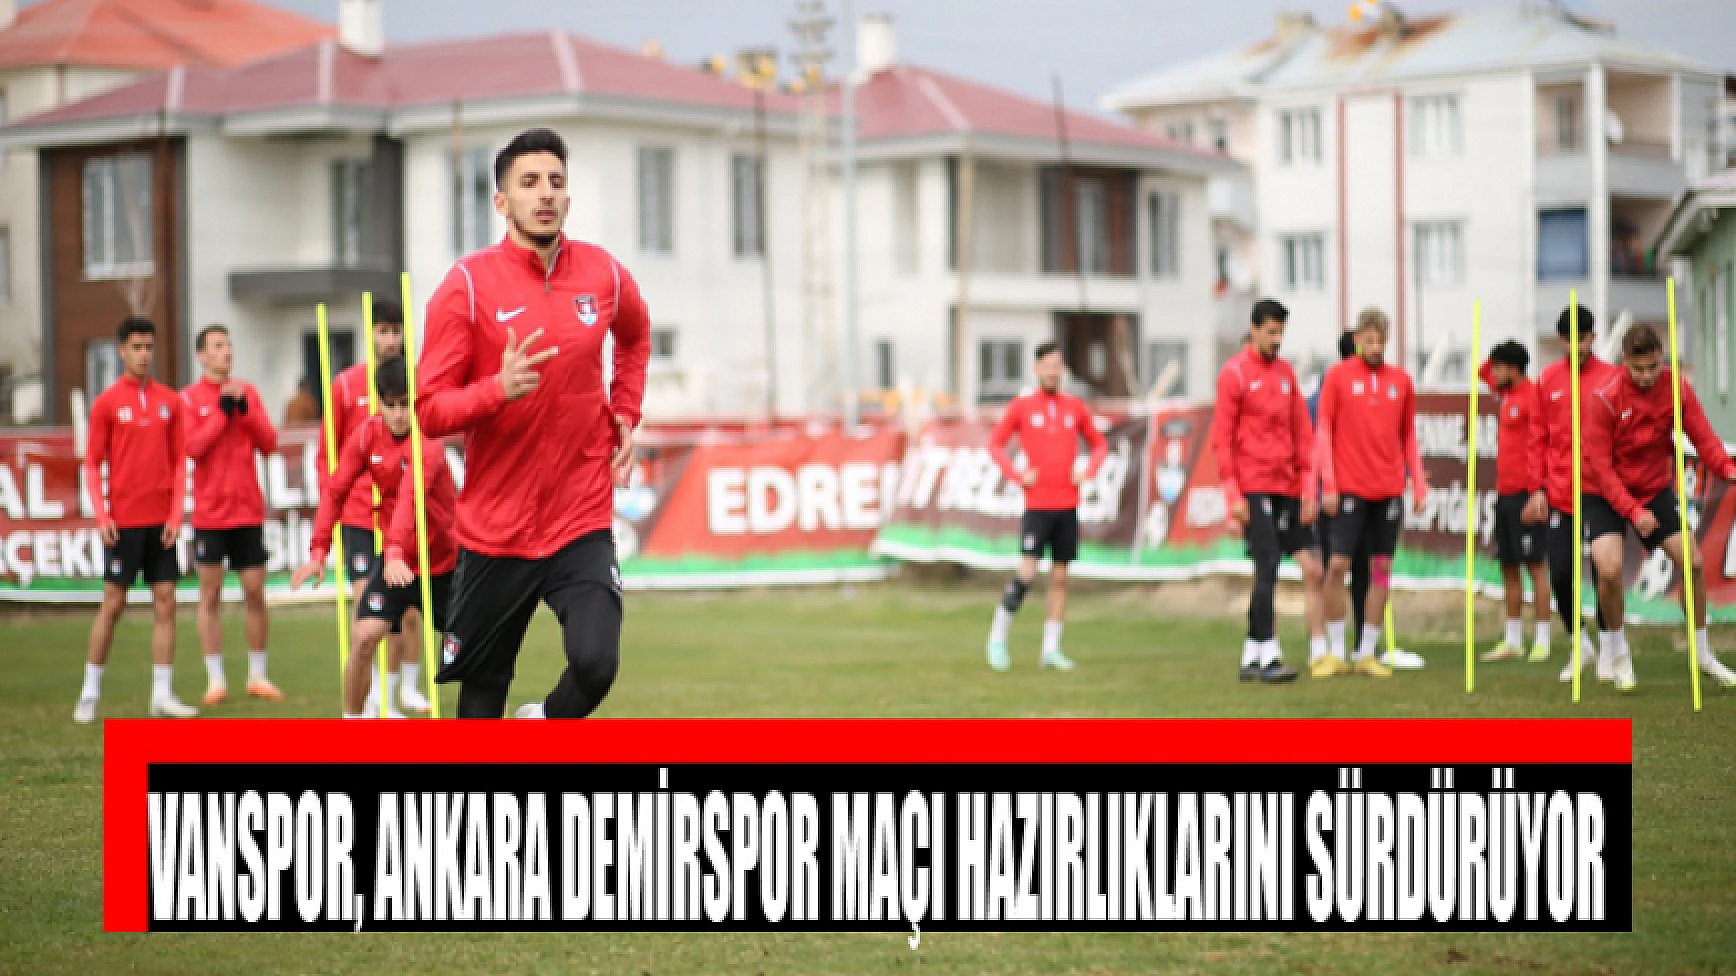 Vanspor, Ankara Demirspor maçı hazırlıklarını sürdürüyor